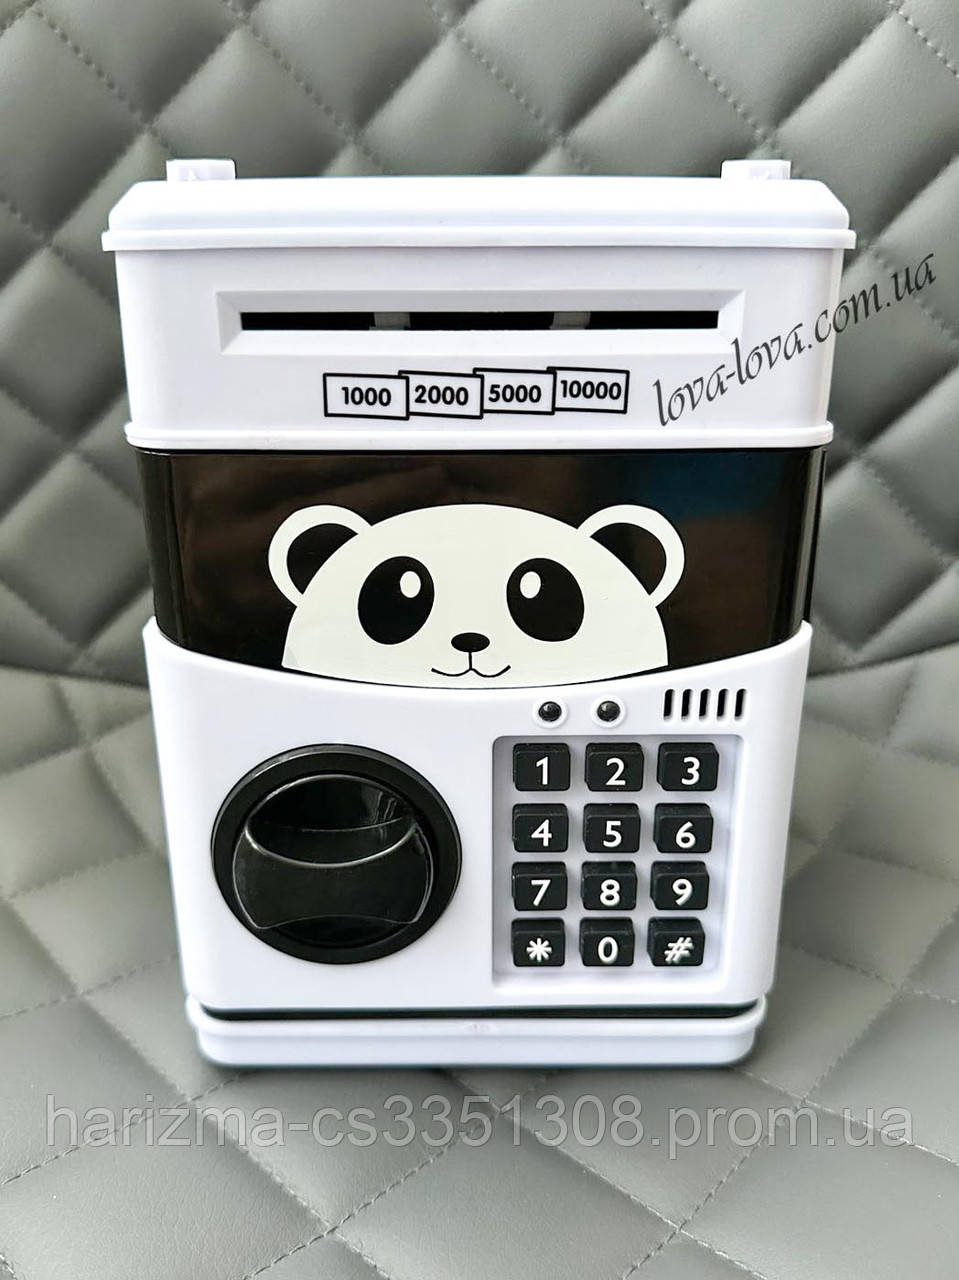 Дитяча електронна сейф-копилка "Панда" з кодовим замком і купюроприймачем для паперових грошей і монет